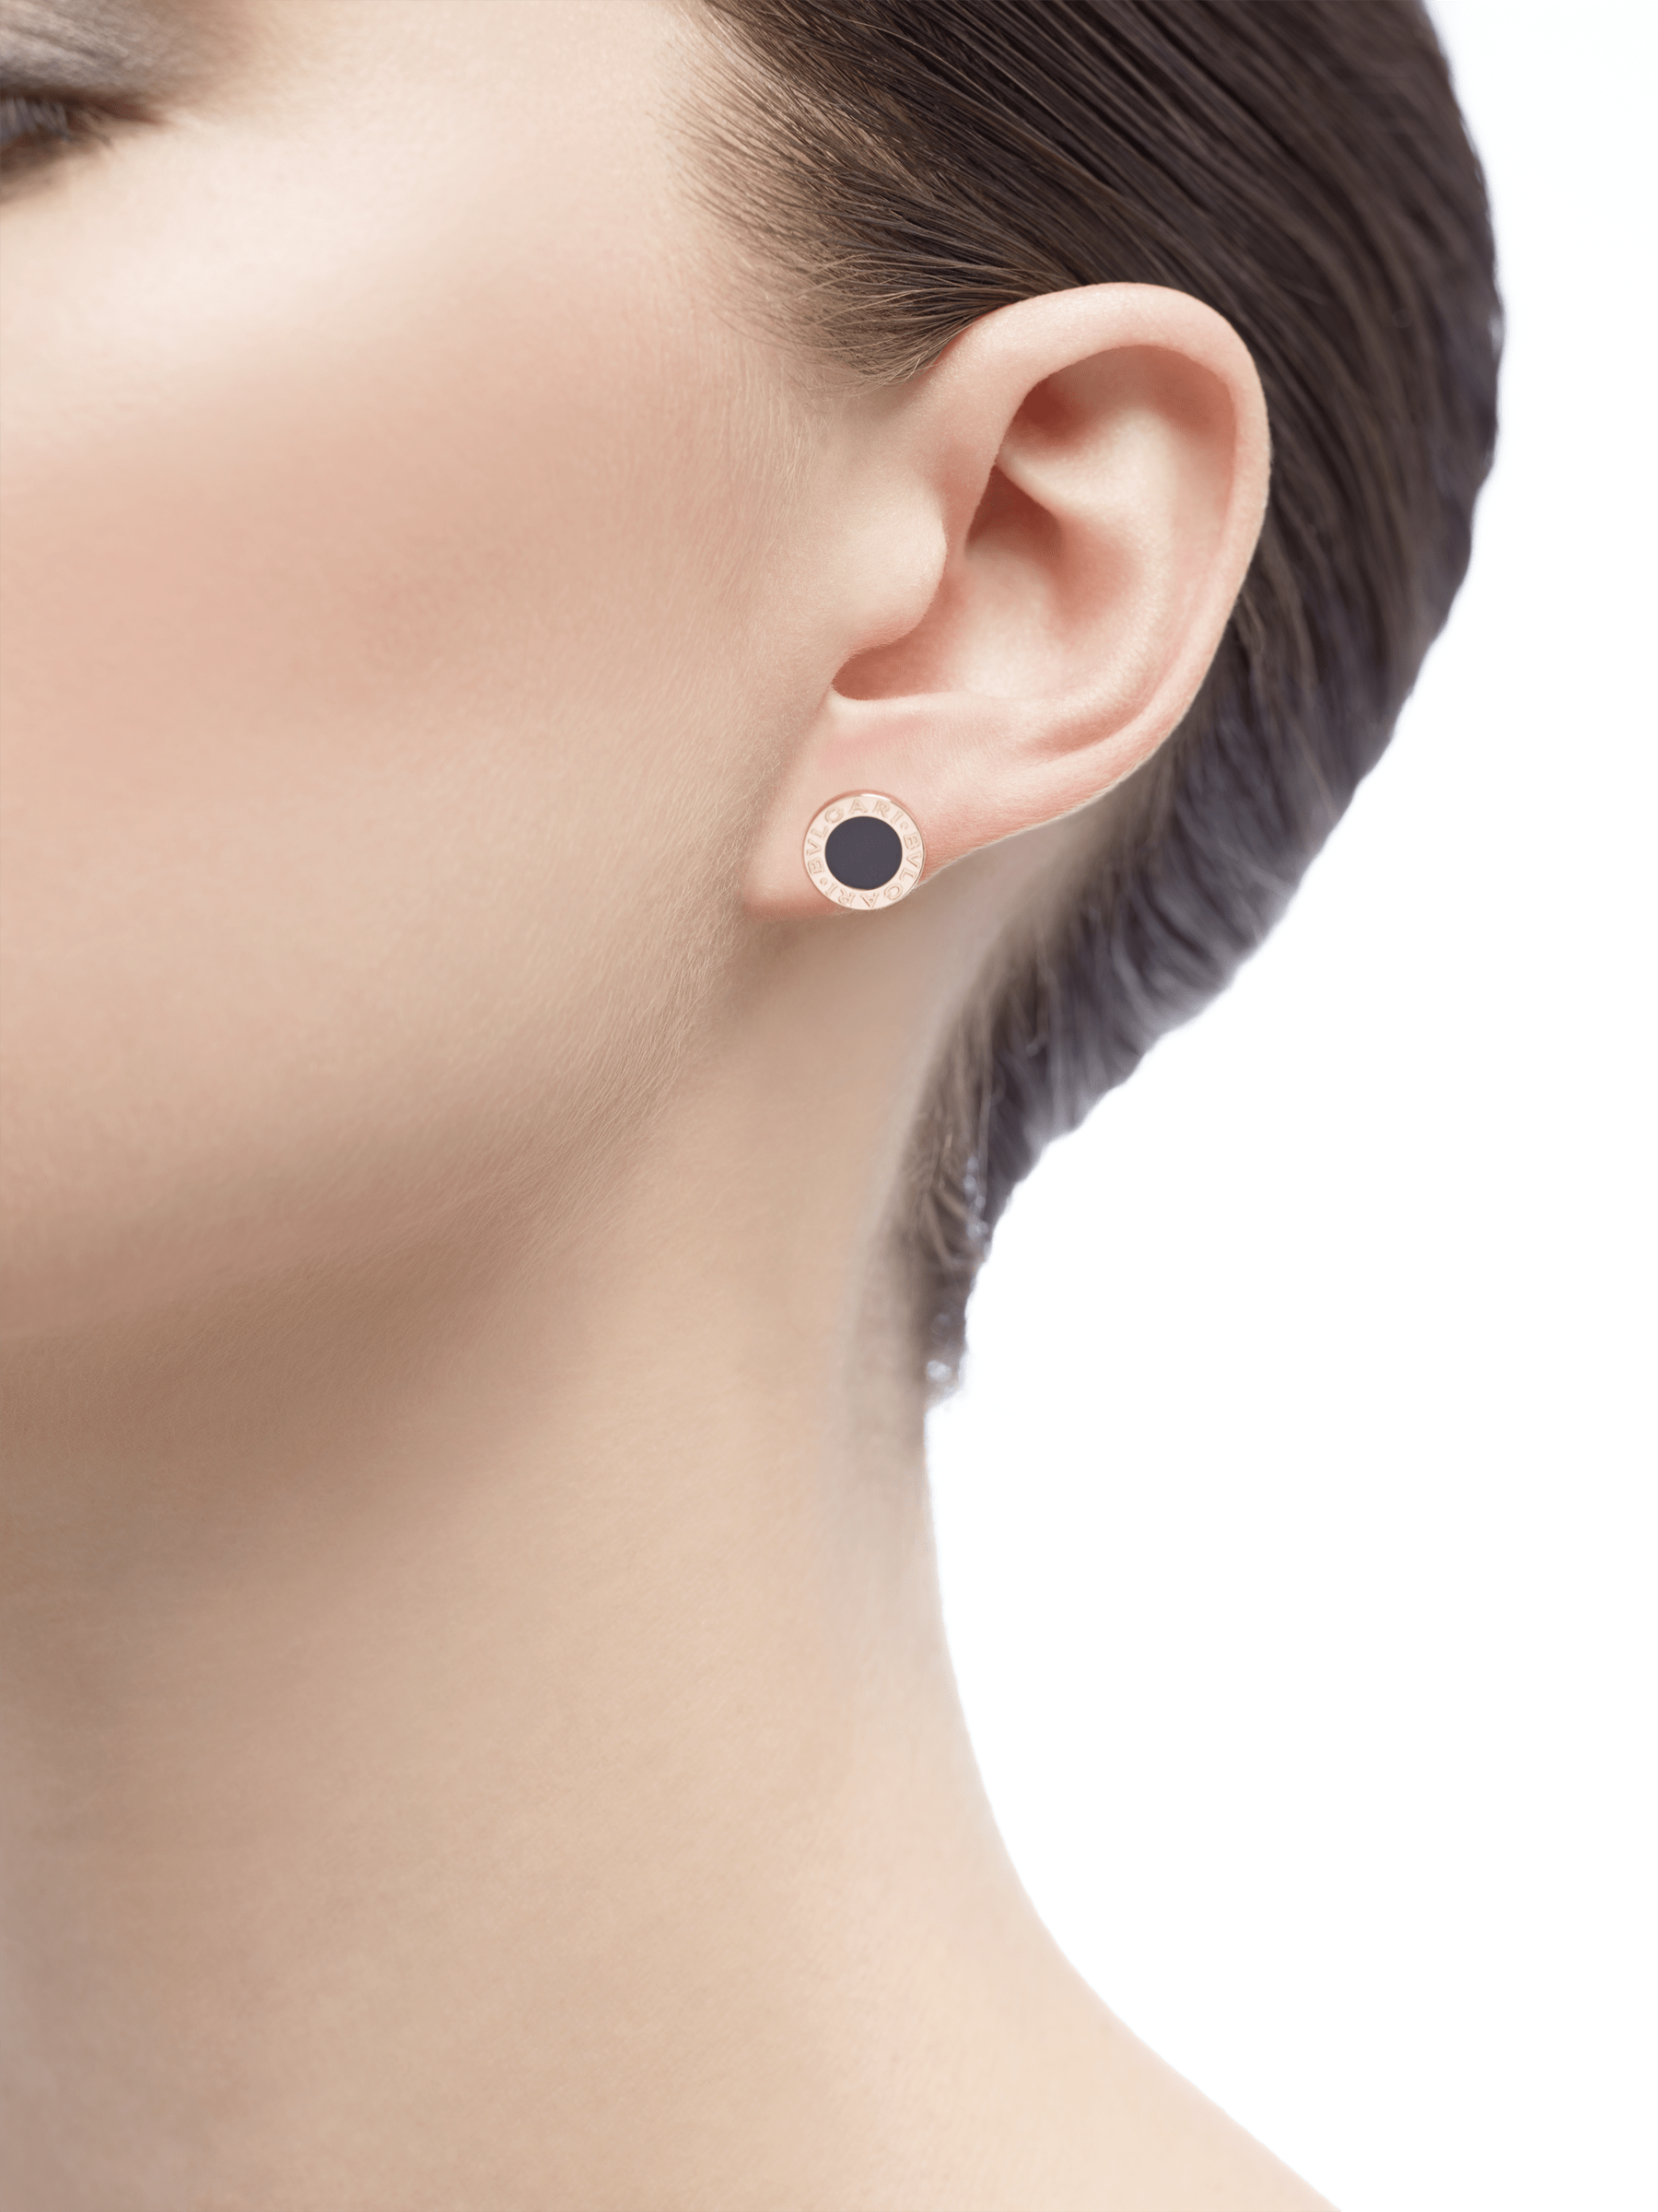 bvlgari earrings onyx